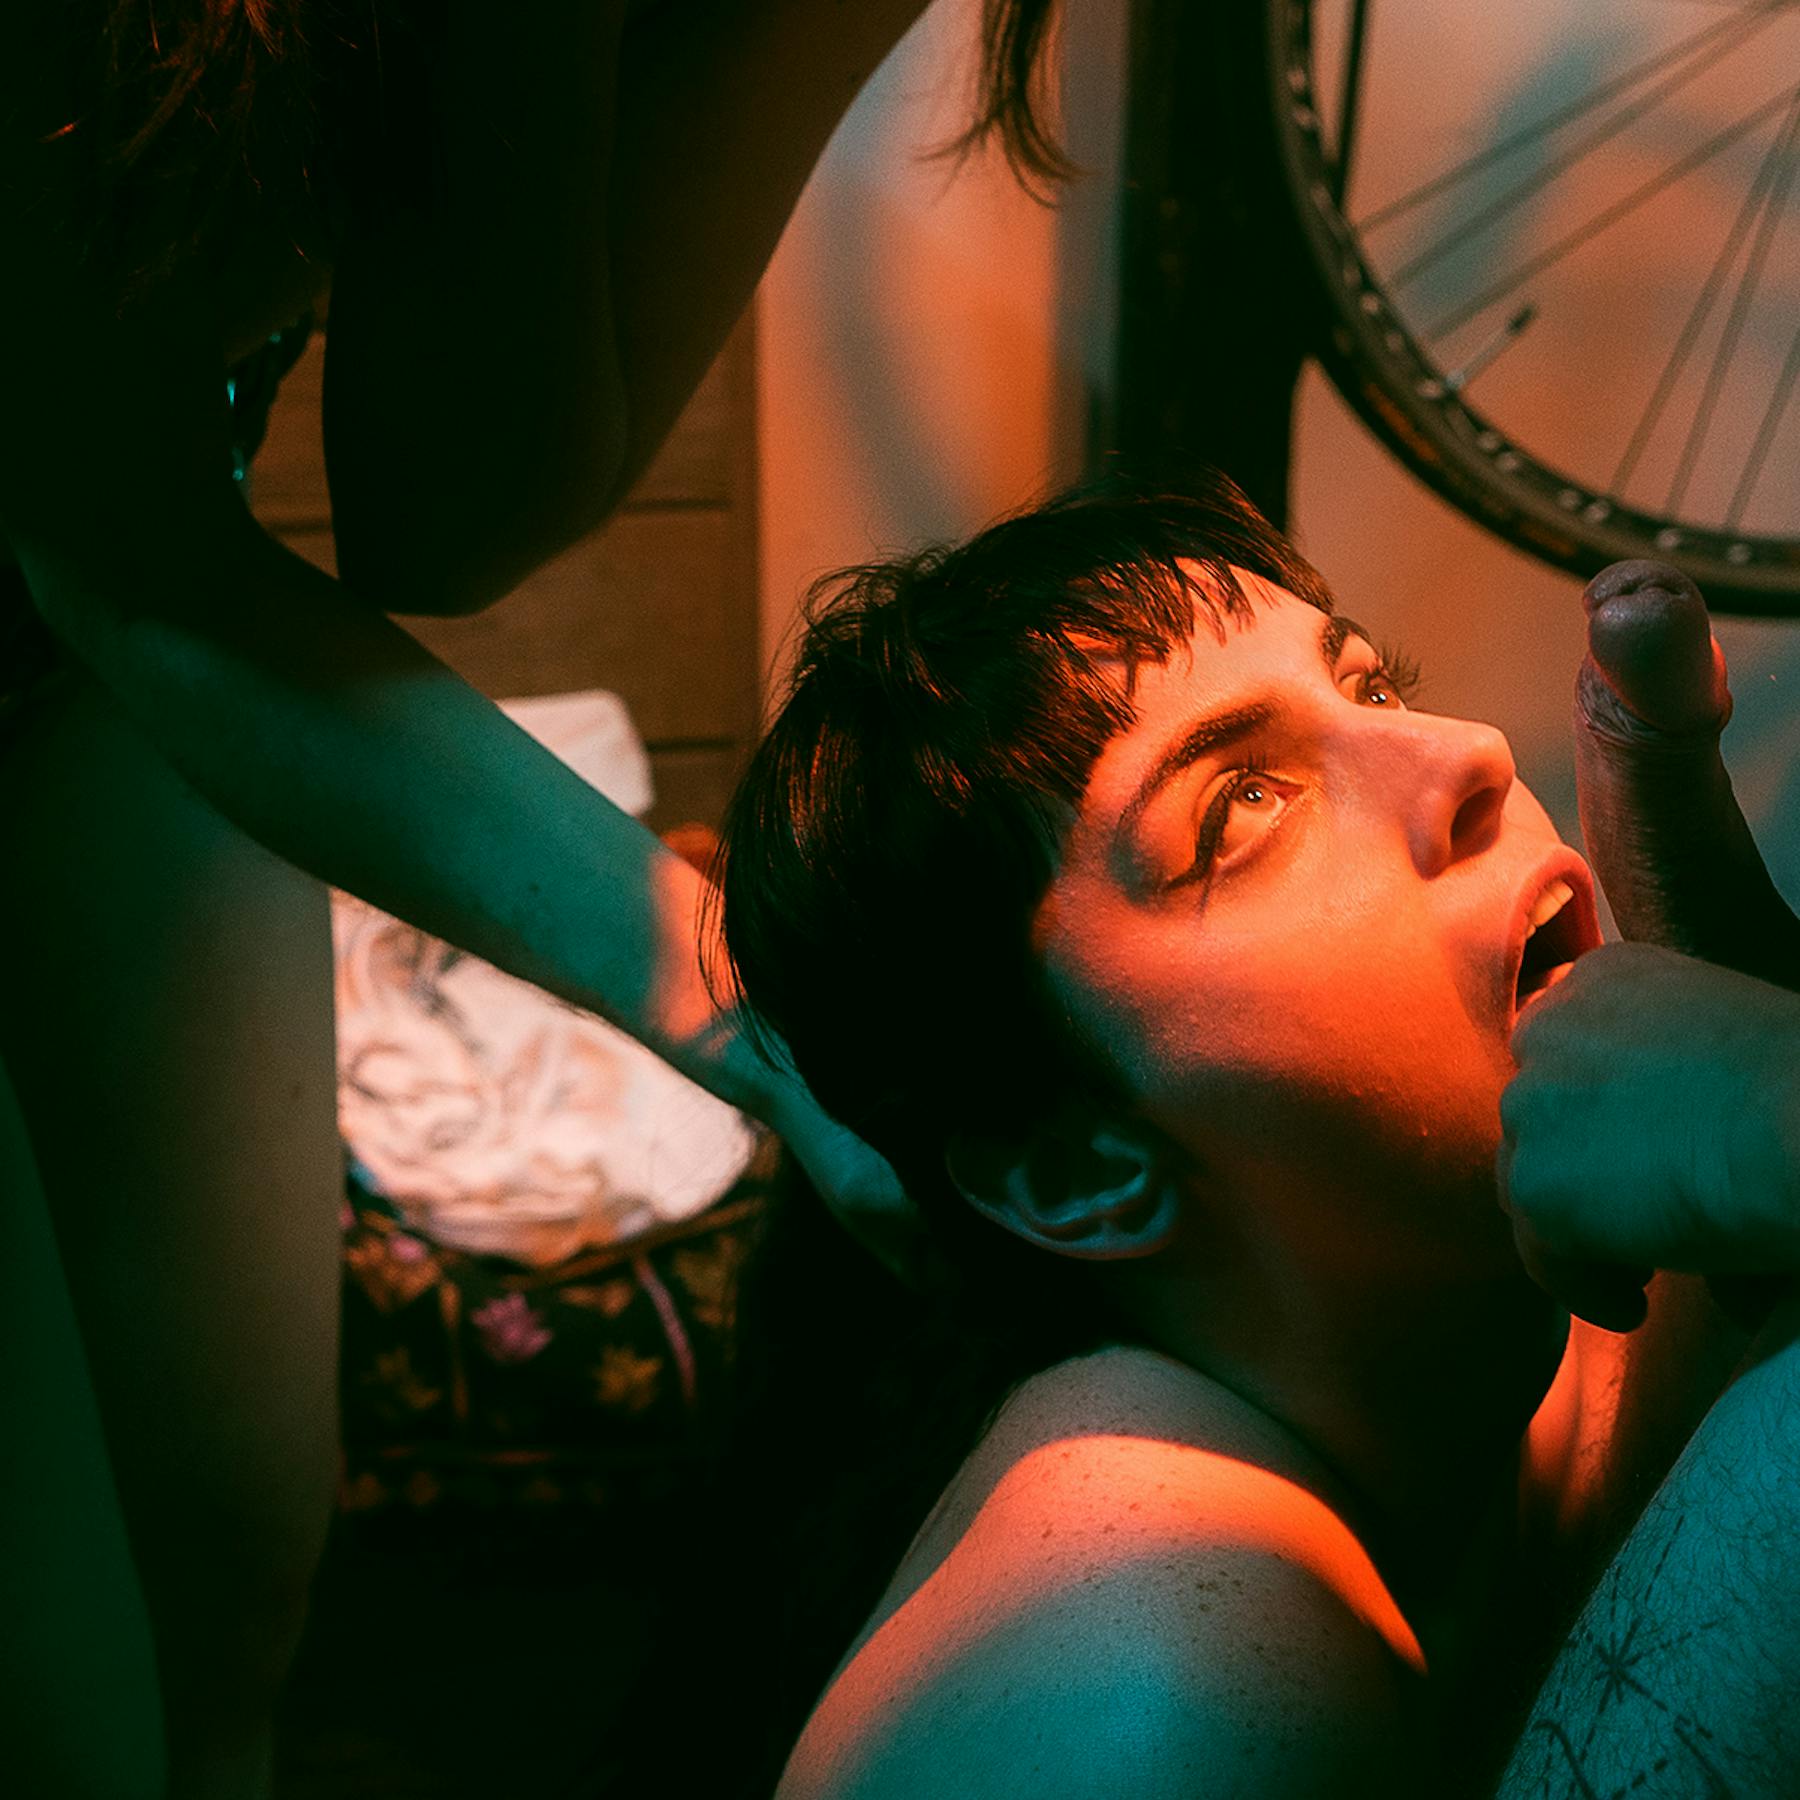 The Bike Club porn photos